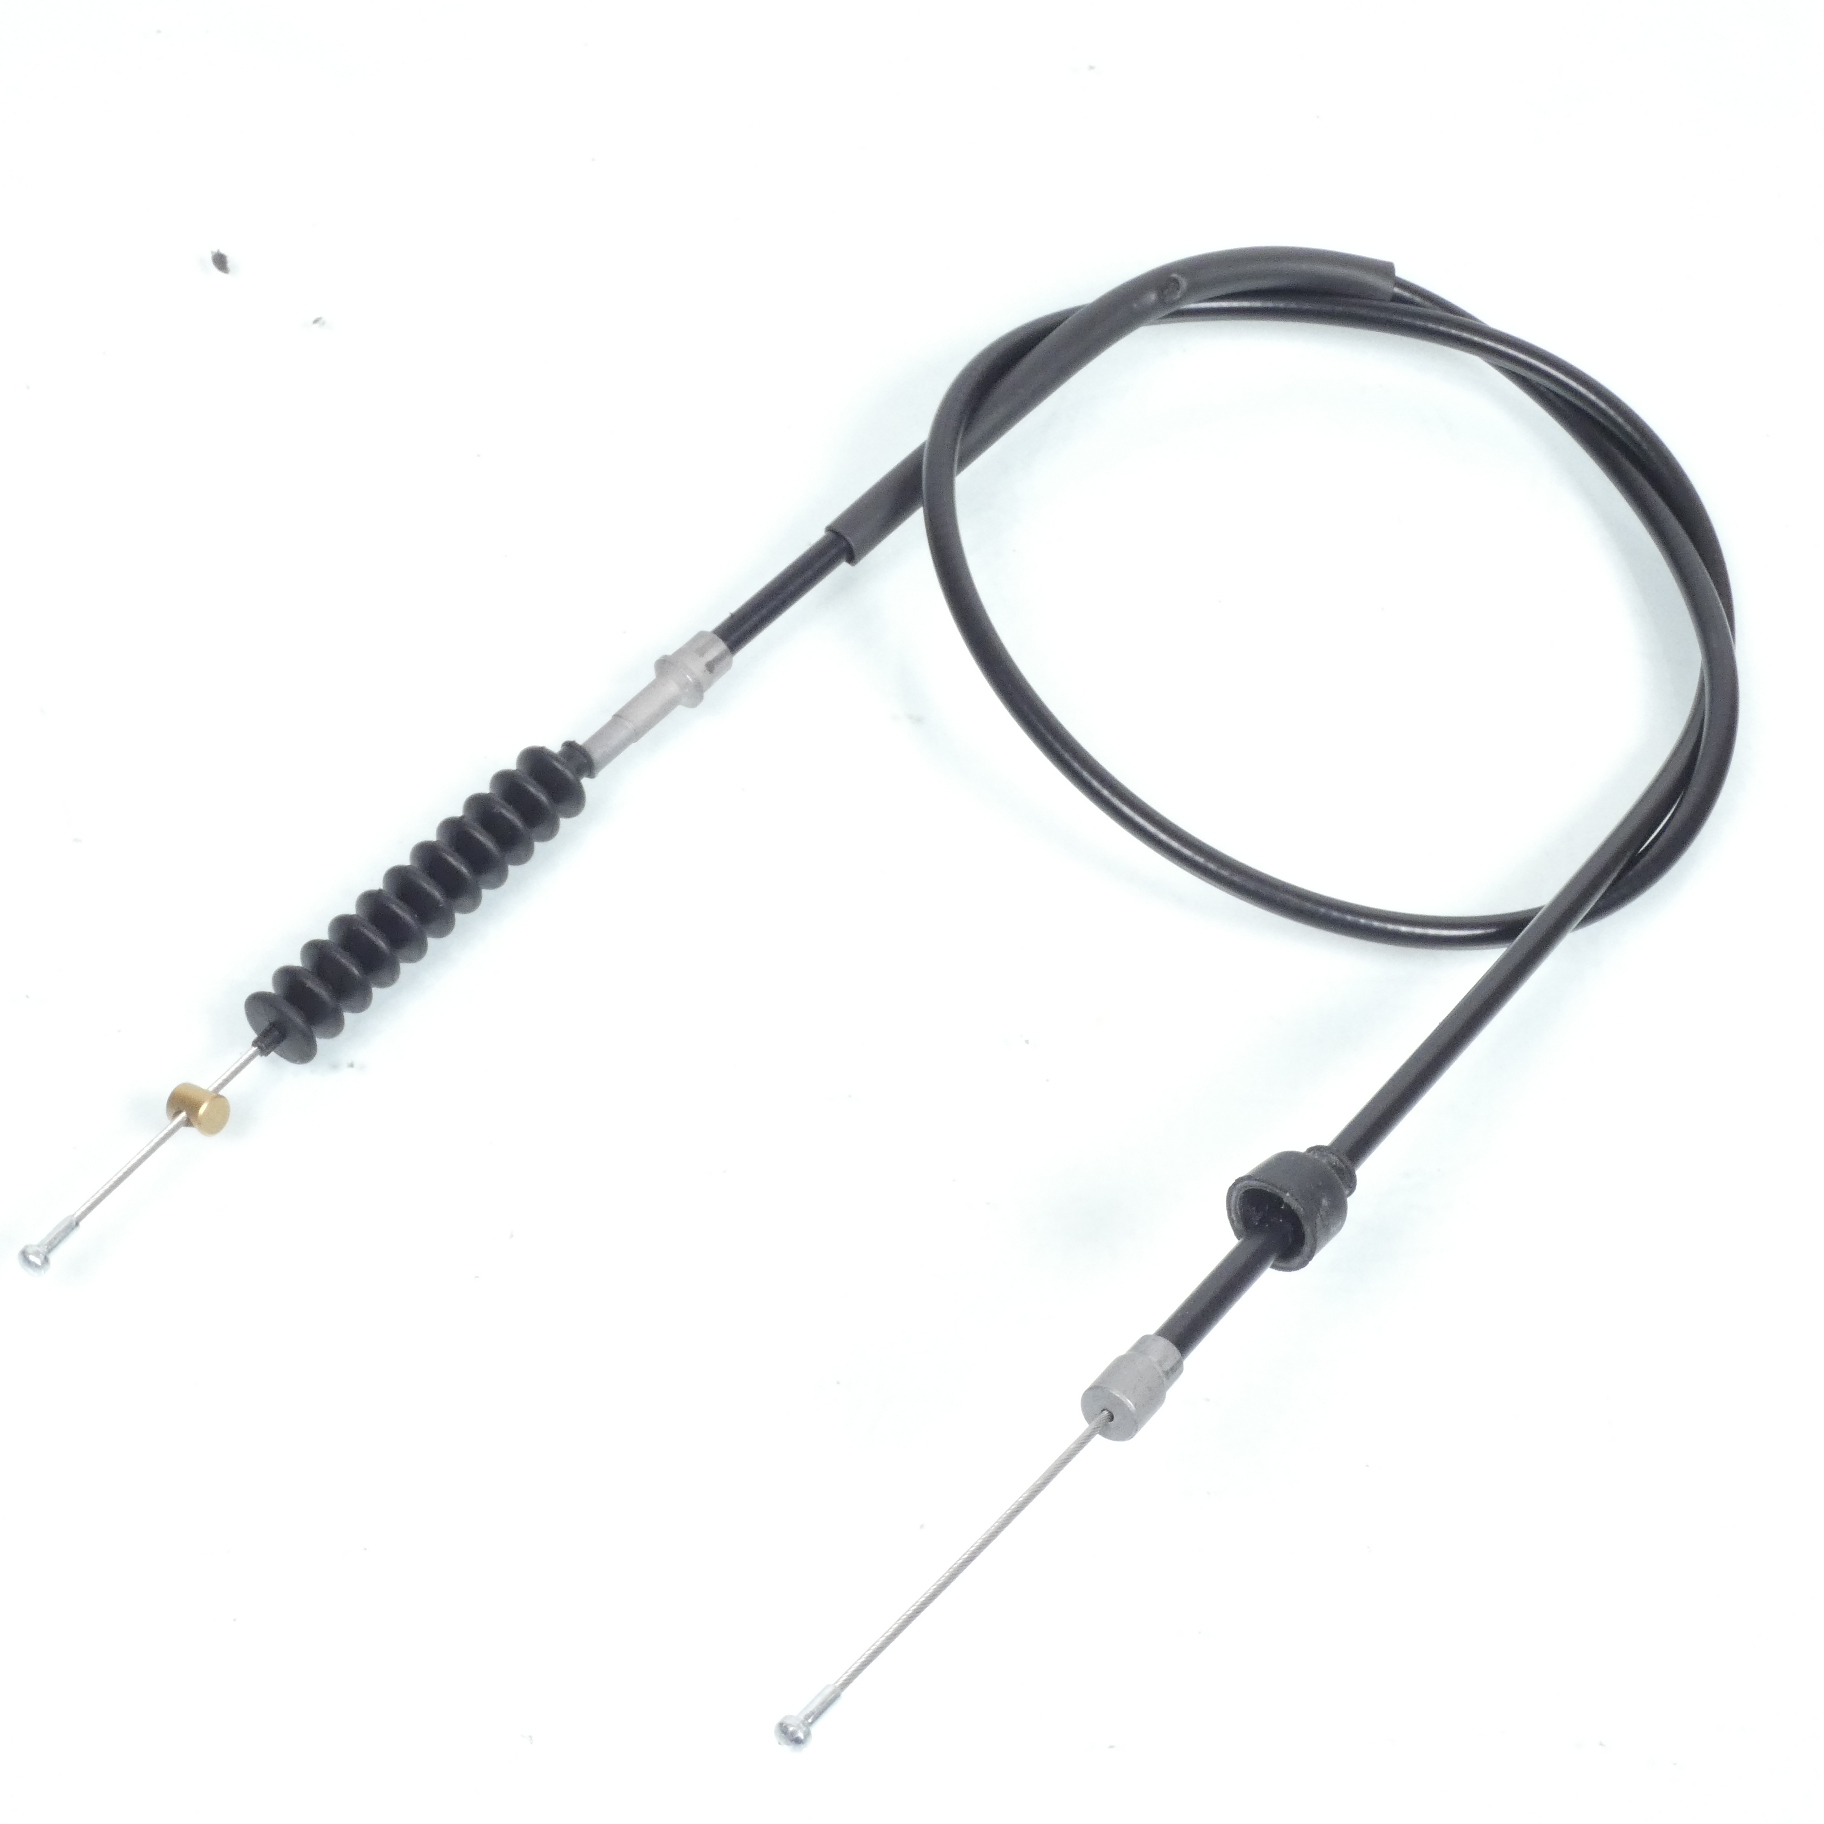 Câble d'embrayage Teknix pour Moto BMW 750 R 75 2069 à 1973 135cm / 109cm Neuf